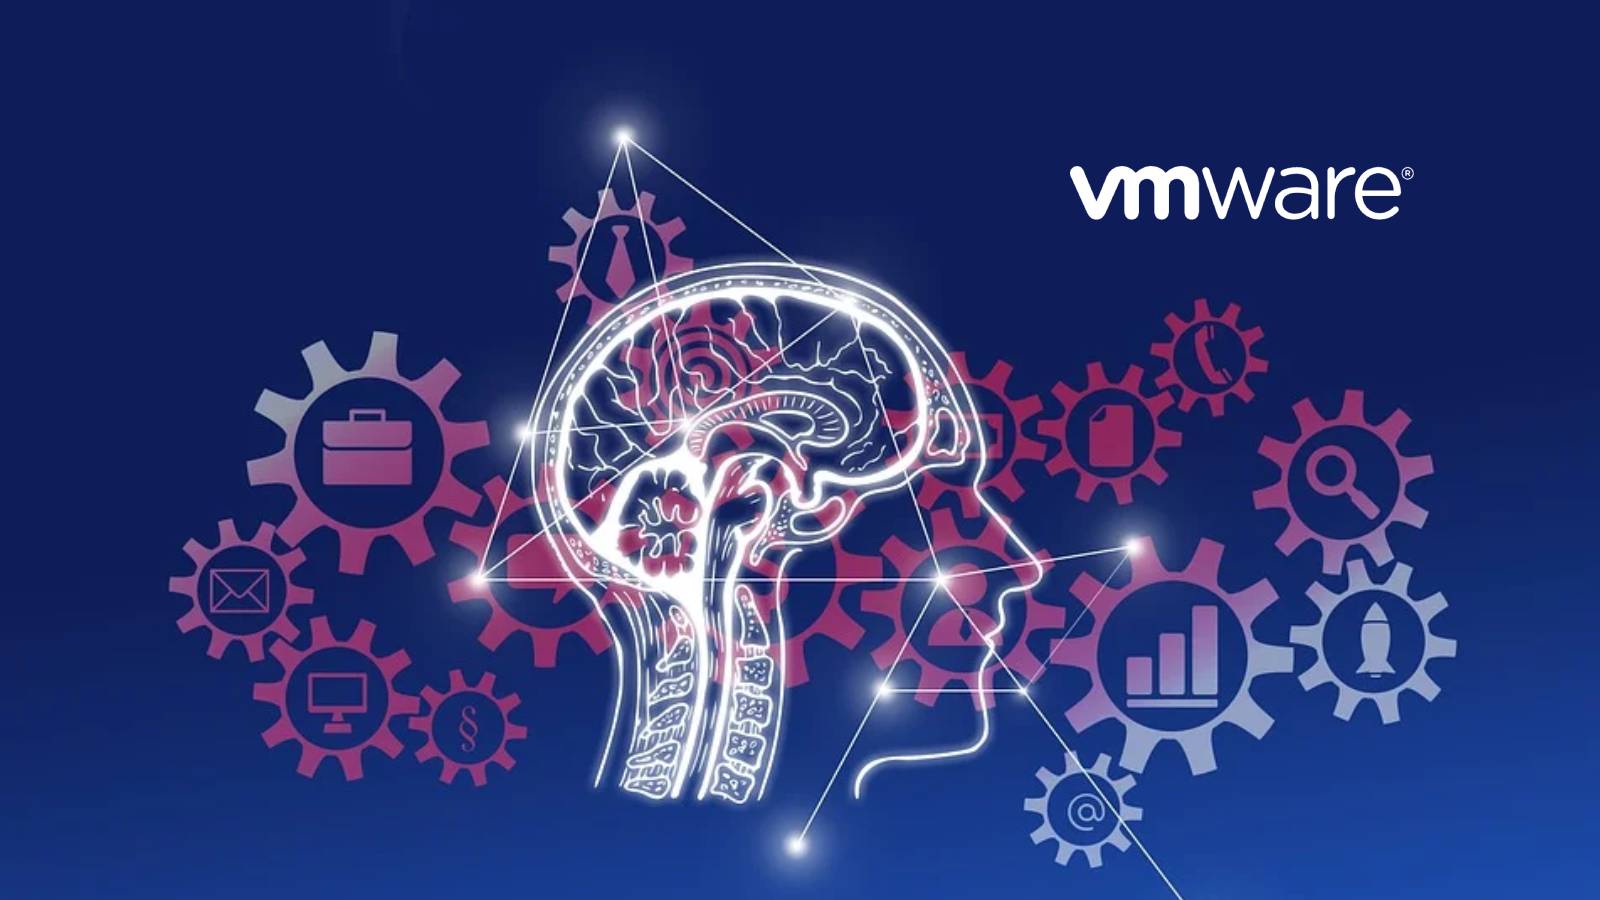 Vmware anunció actualizaciones de su portafolio para ayudar a los clientes a modernizar sus aplicaciones e infraestructura.